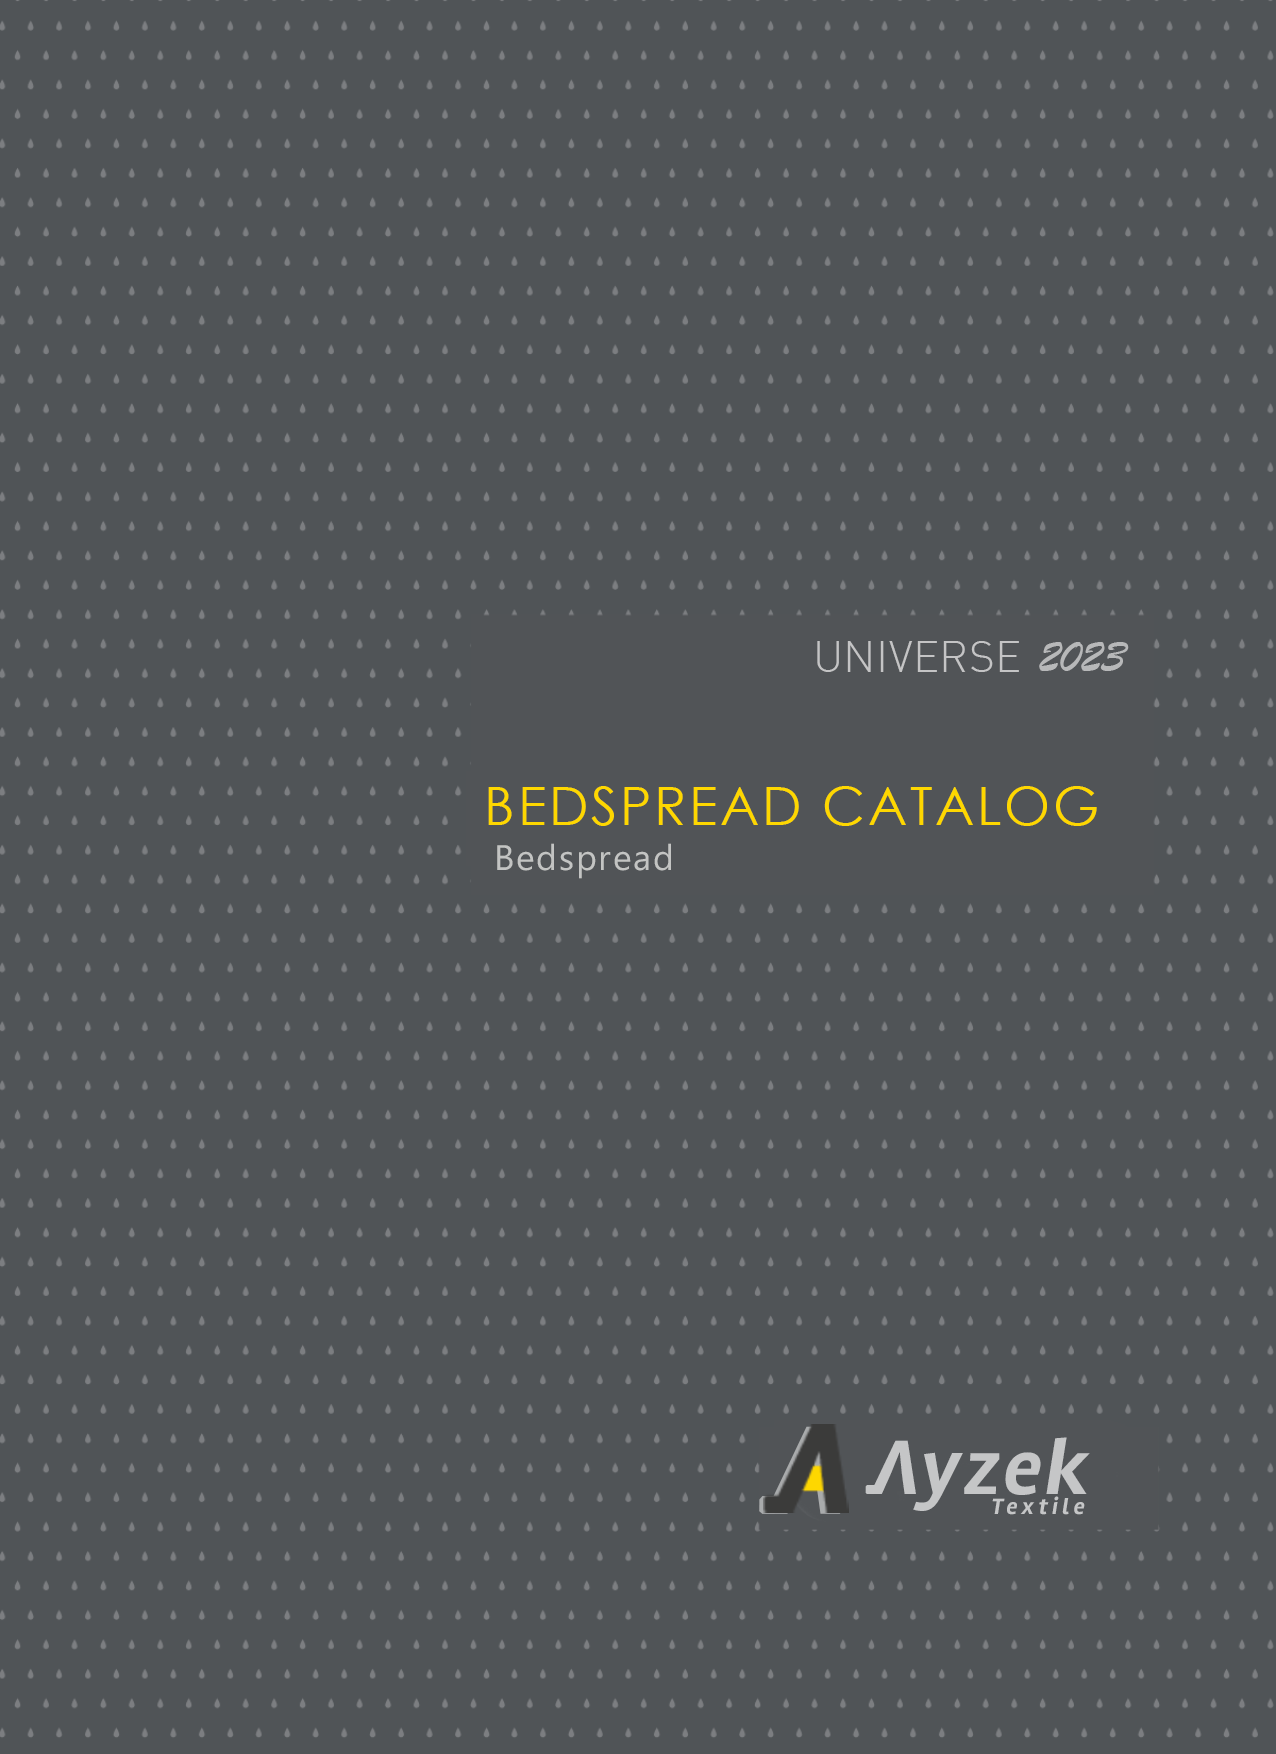 Ayzek-Textile-Bedspread-Catalog